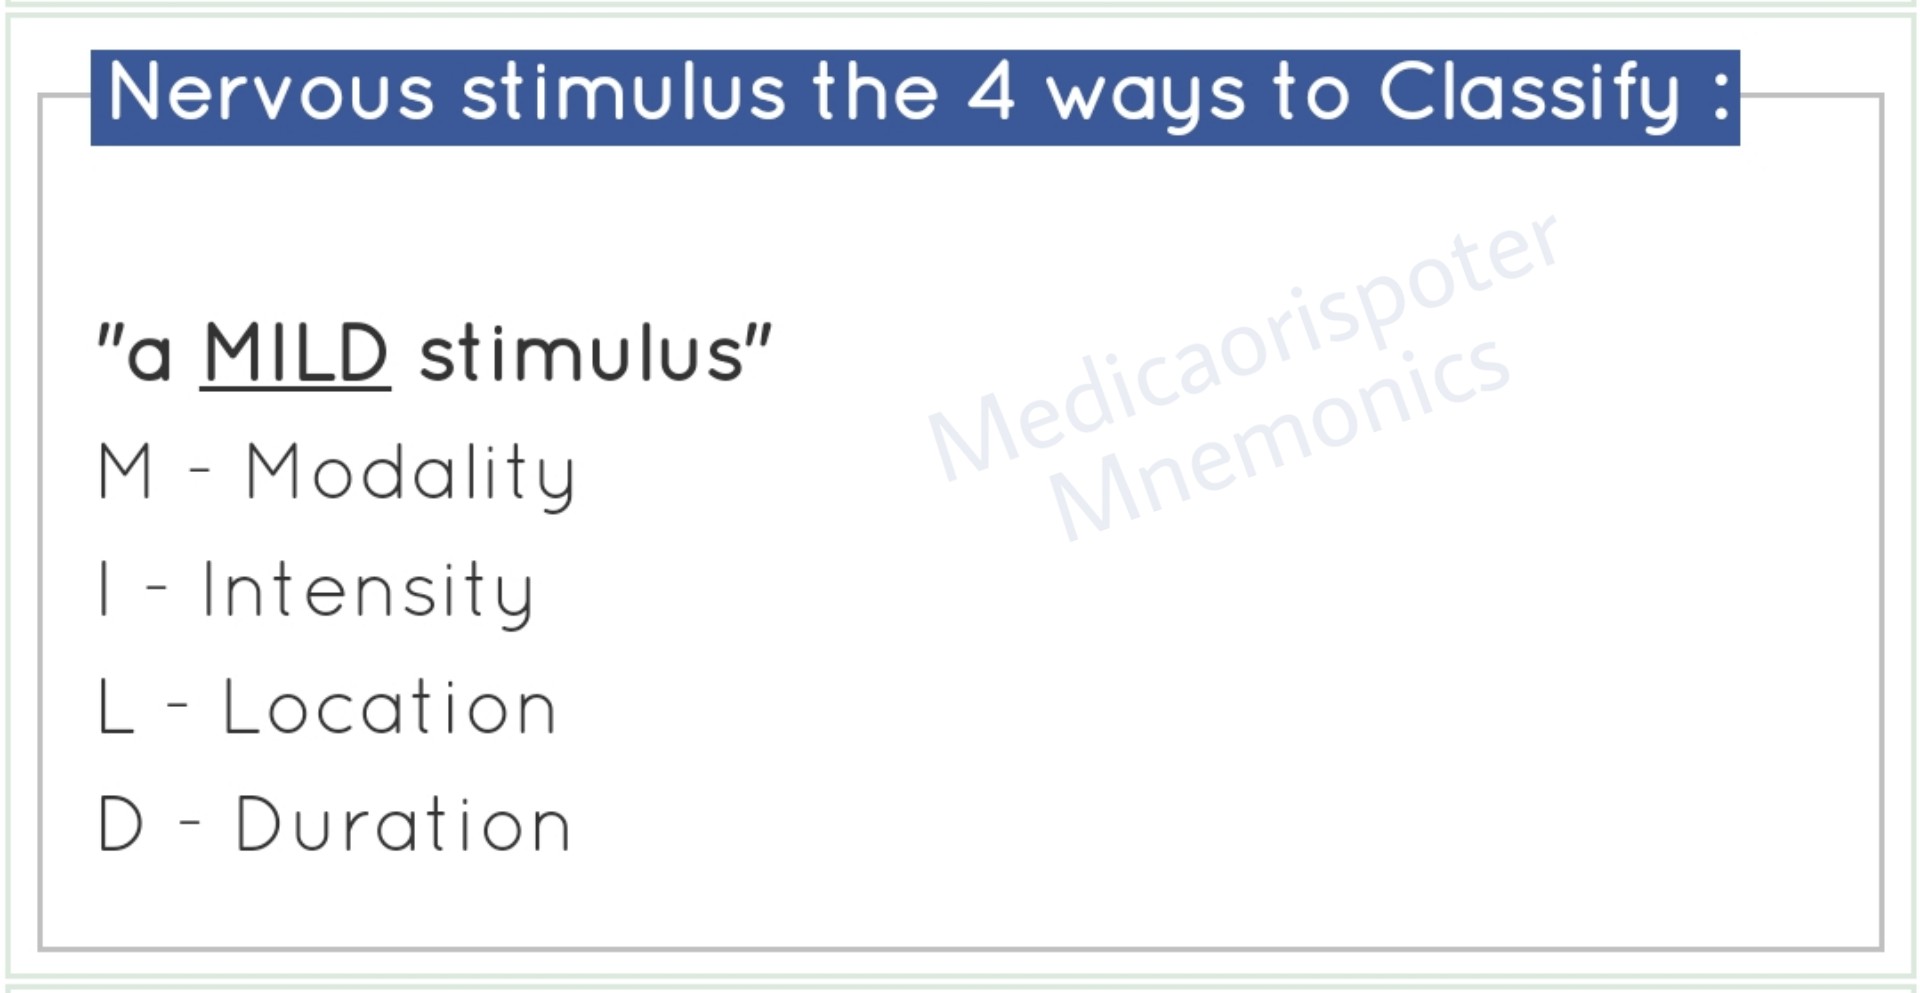 Ways to Classify Nervous Stimuli